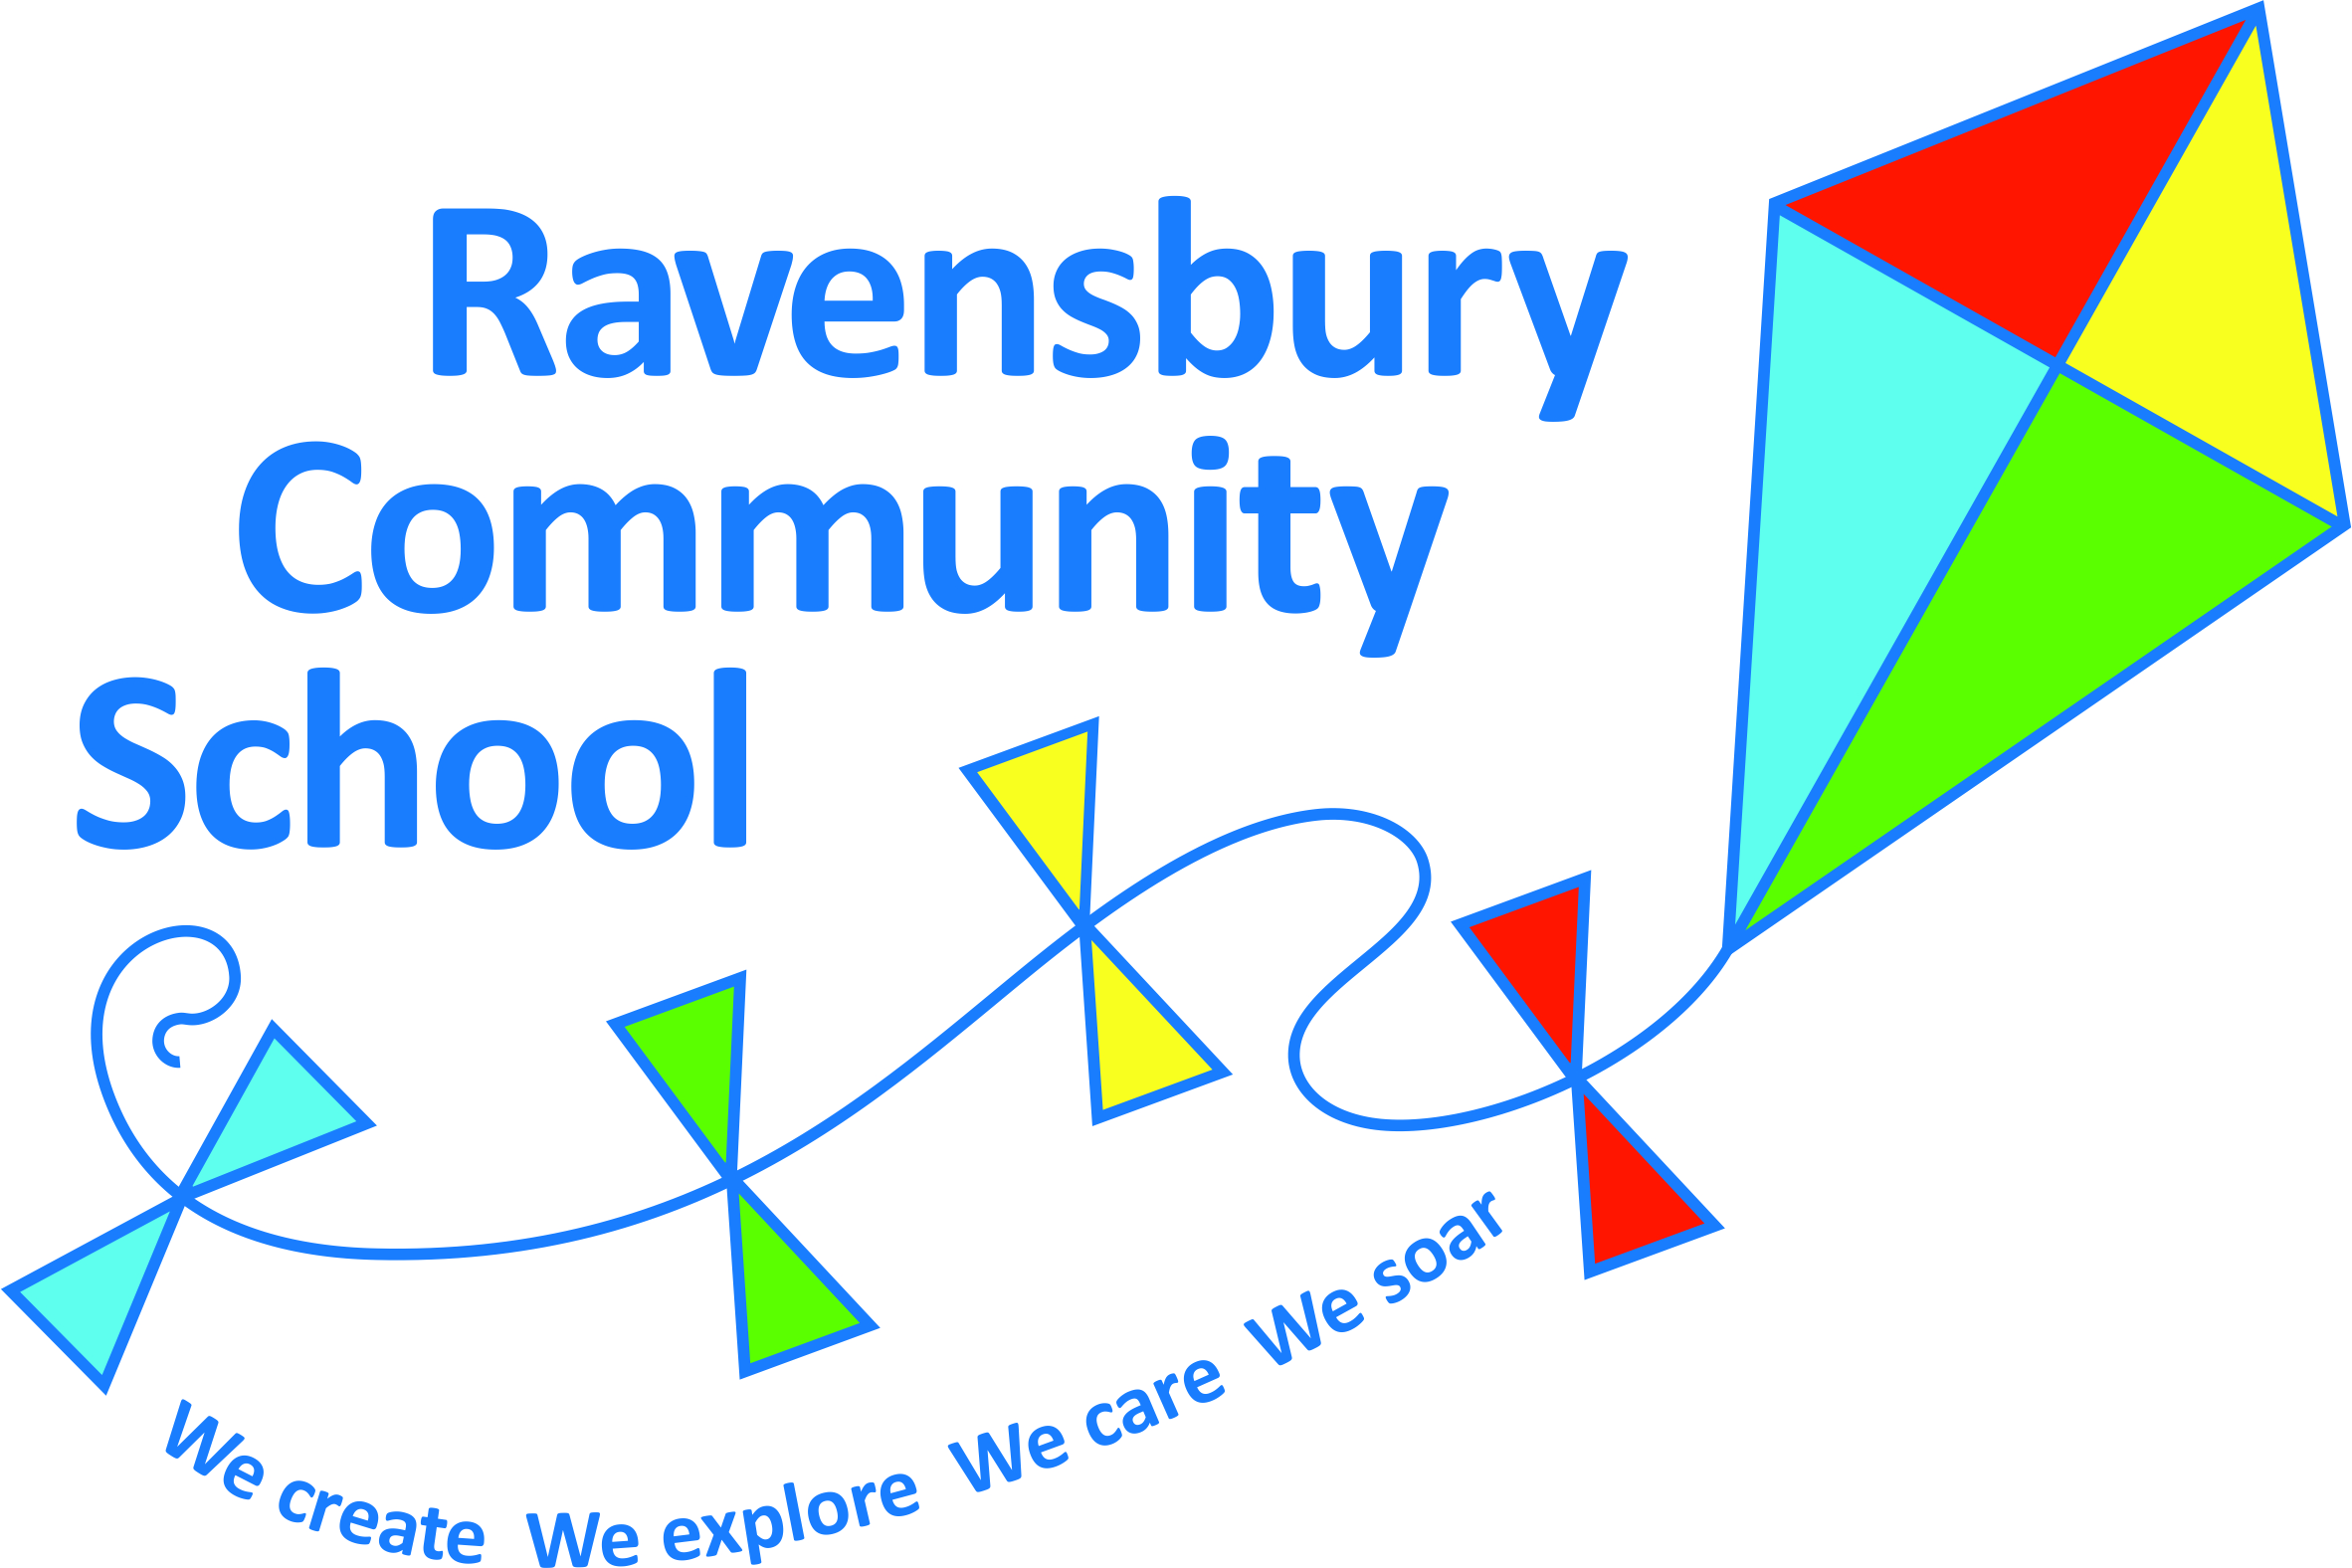 Ravensbury Community School